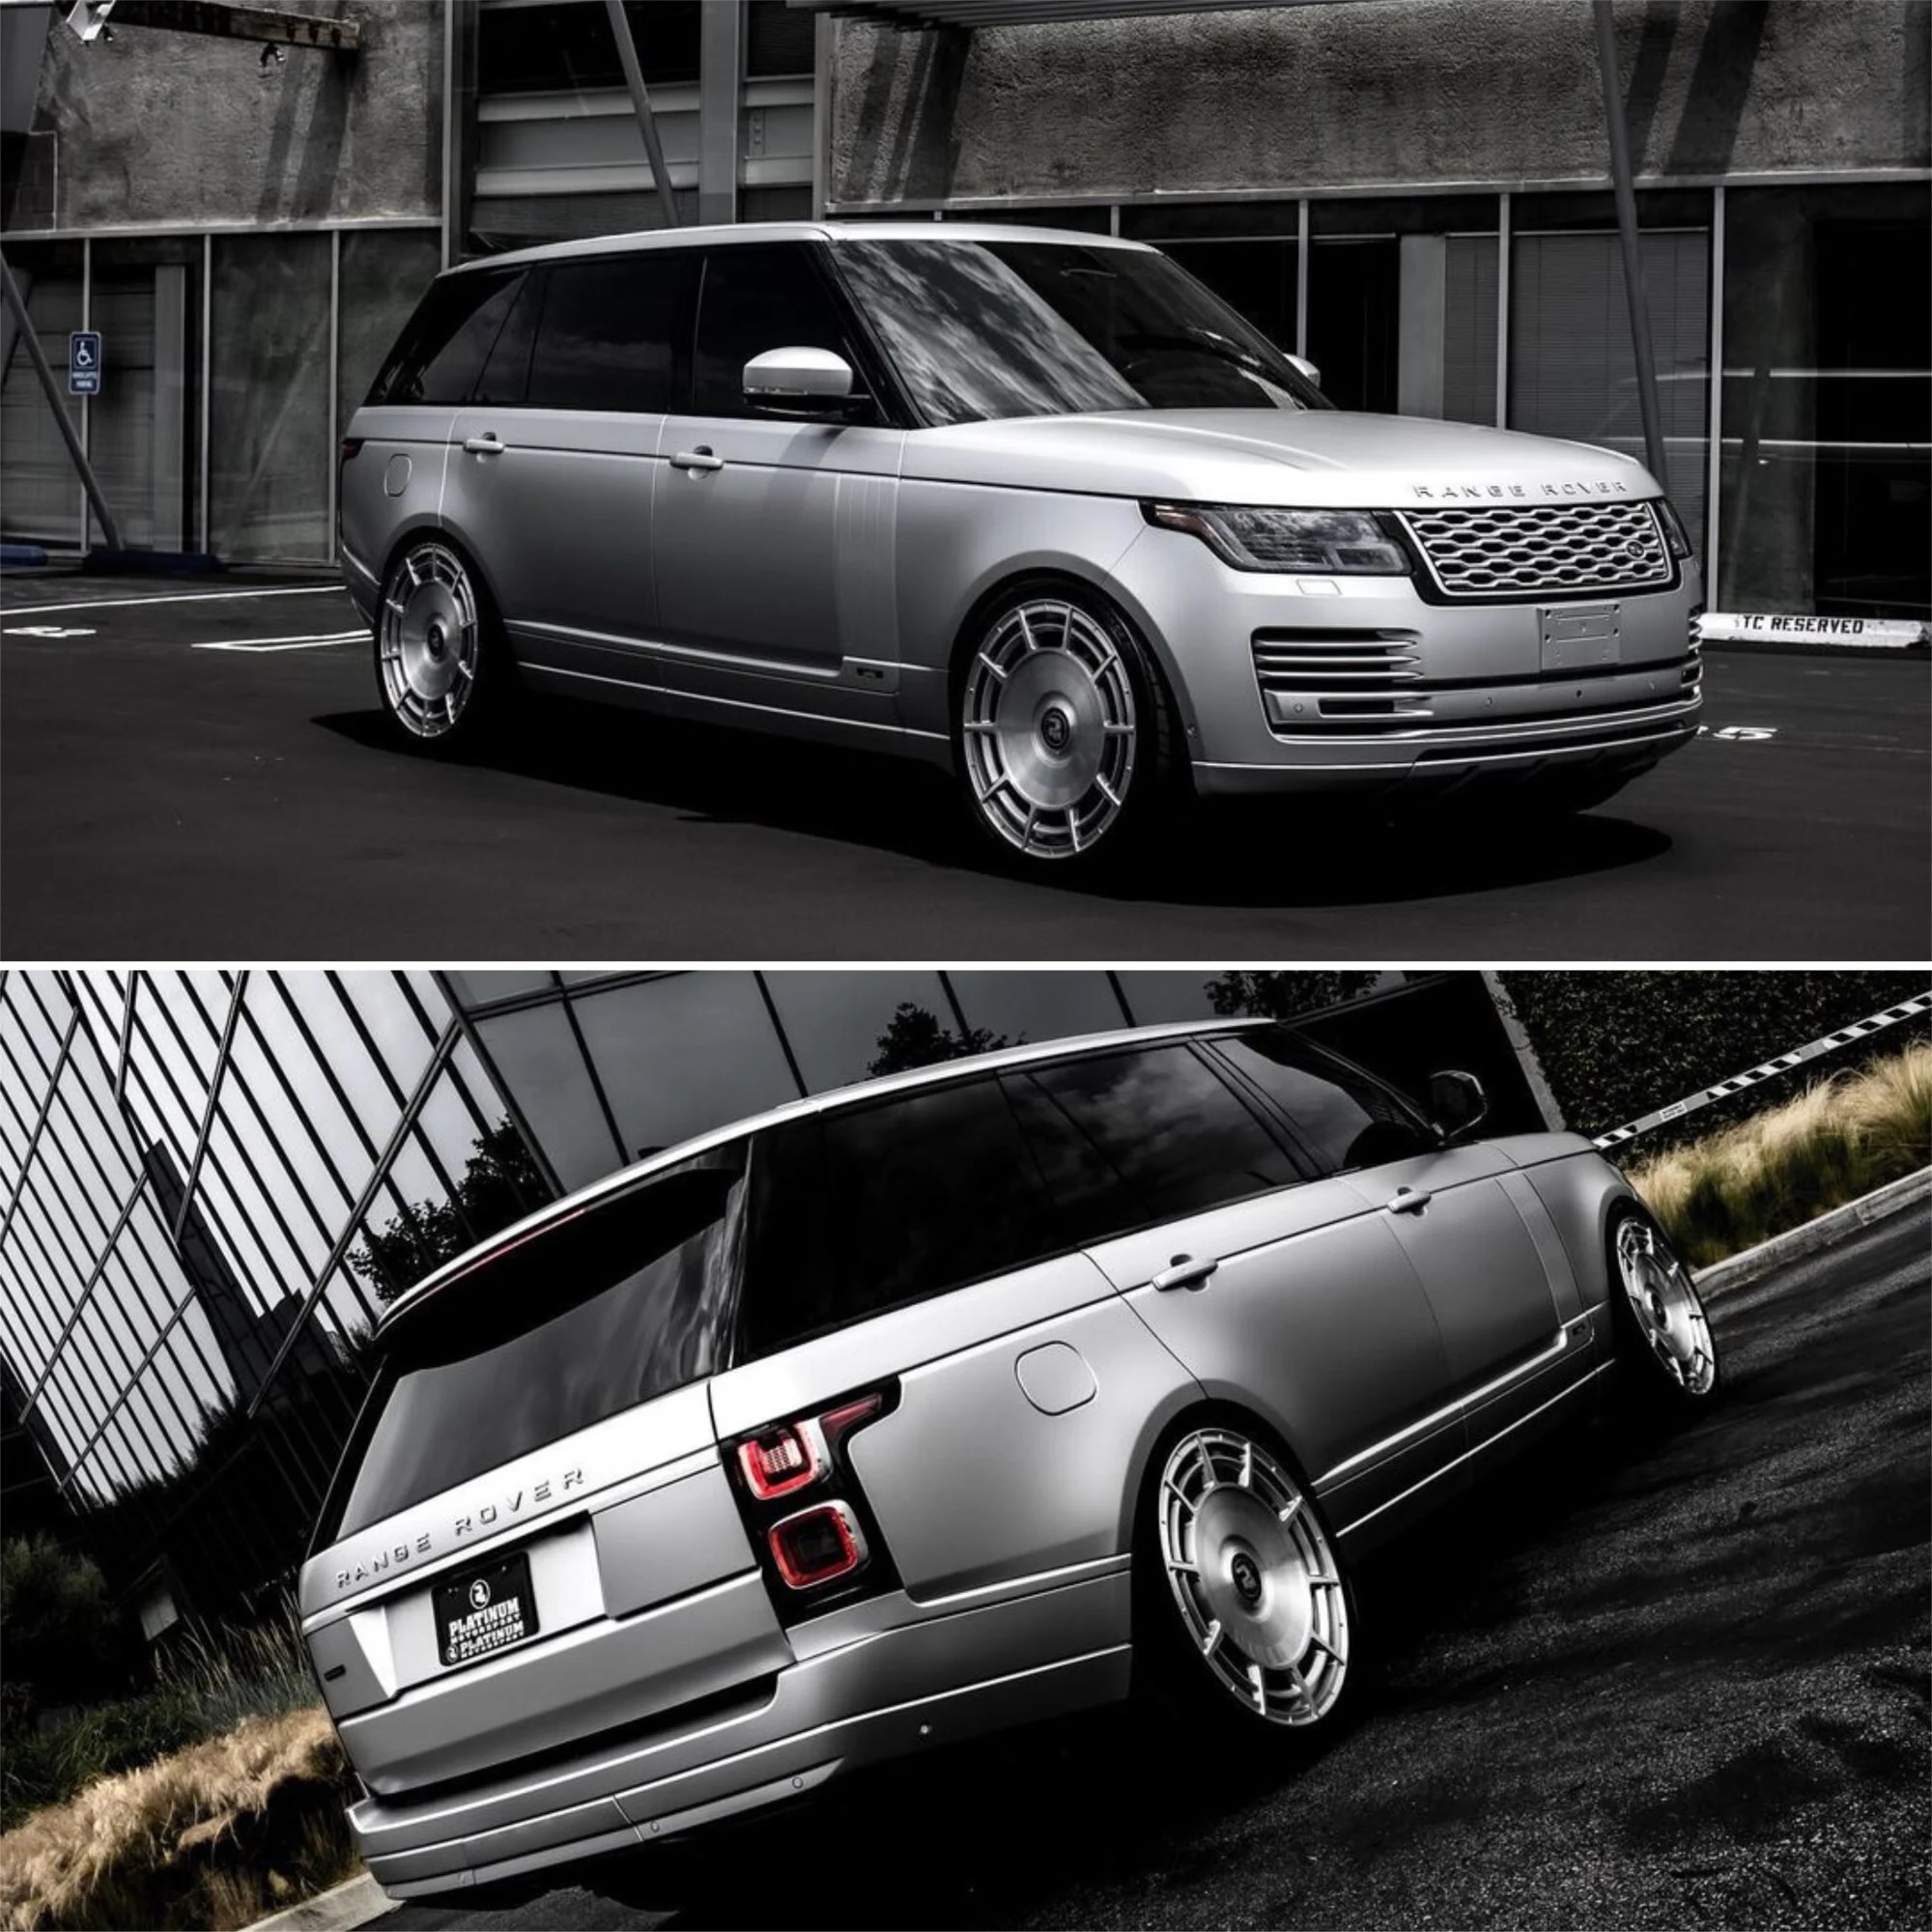  Kim's New Range Rover Autobiography, được sơn màu KK Pantone Satin Silver trên bánh xe  ...